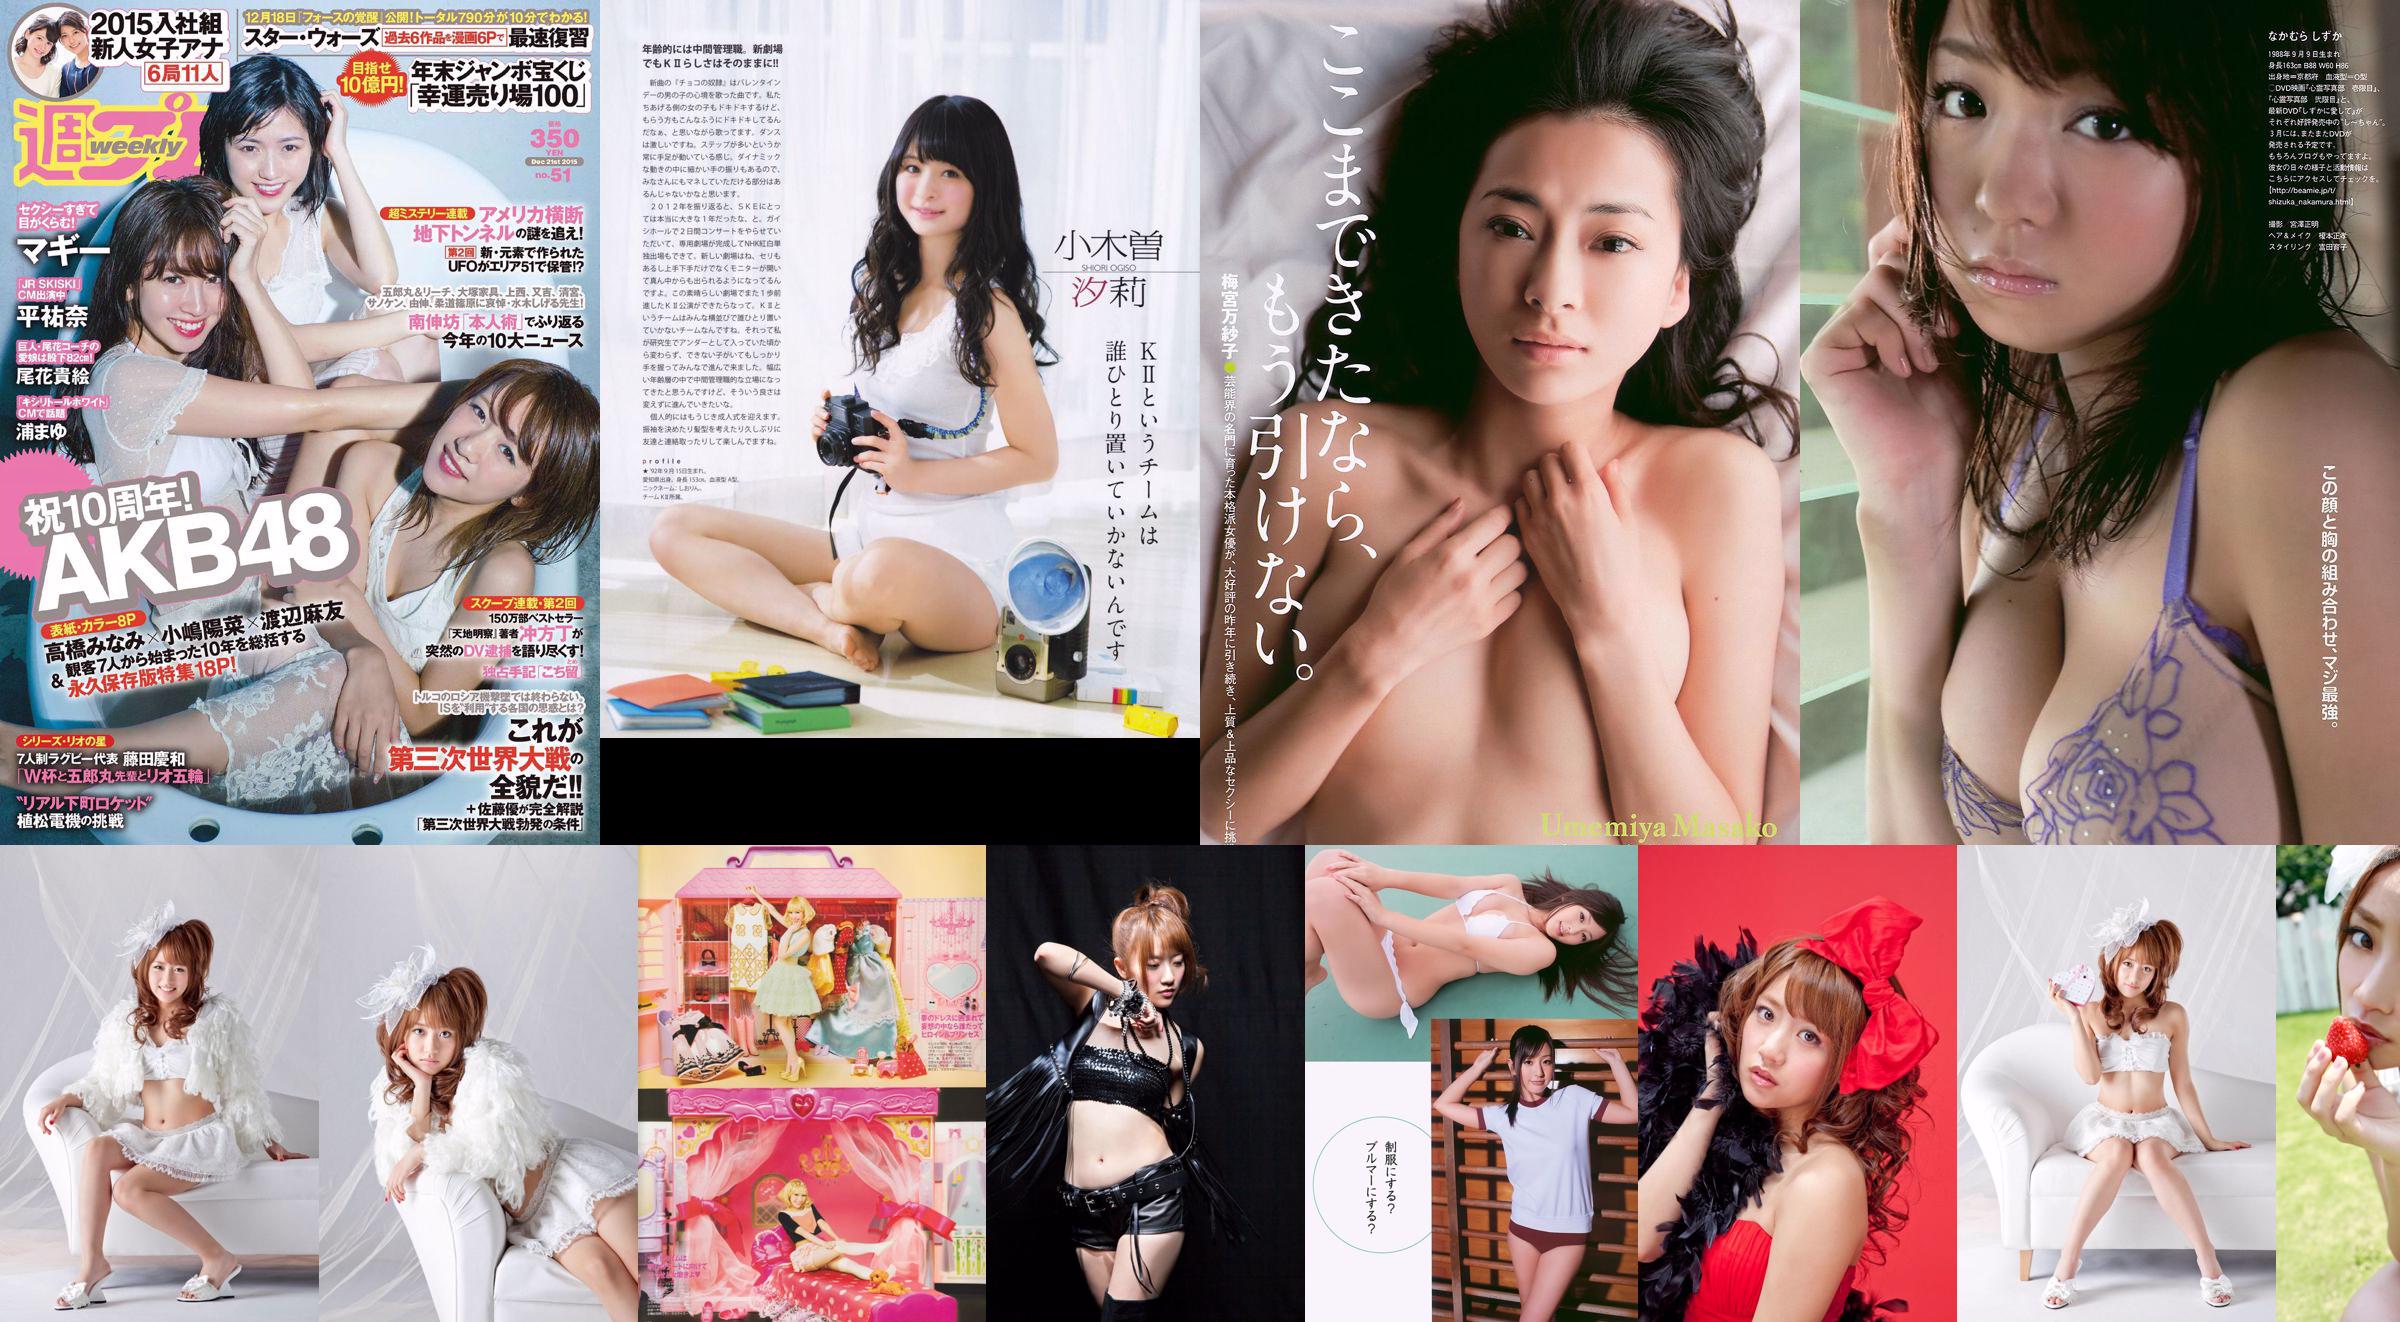 Minami Takahashi Haruna Kojima Mayu Watanabe Maggie Takae Obana Yuna Taira Mayu Ura Mitadera En [Weekly Playboy] 2015 No.51 Photo No.5baf71 Page 1